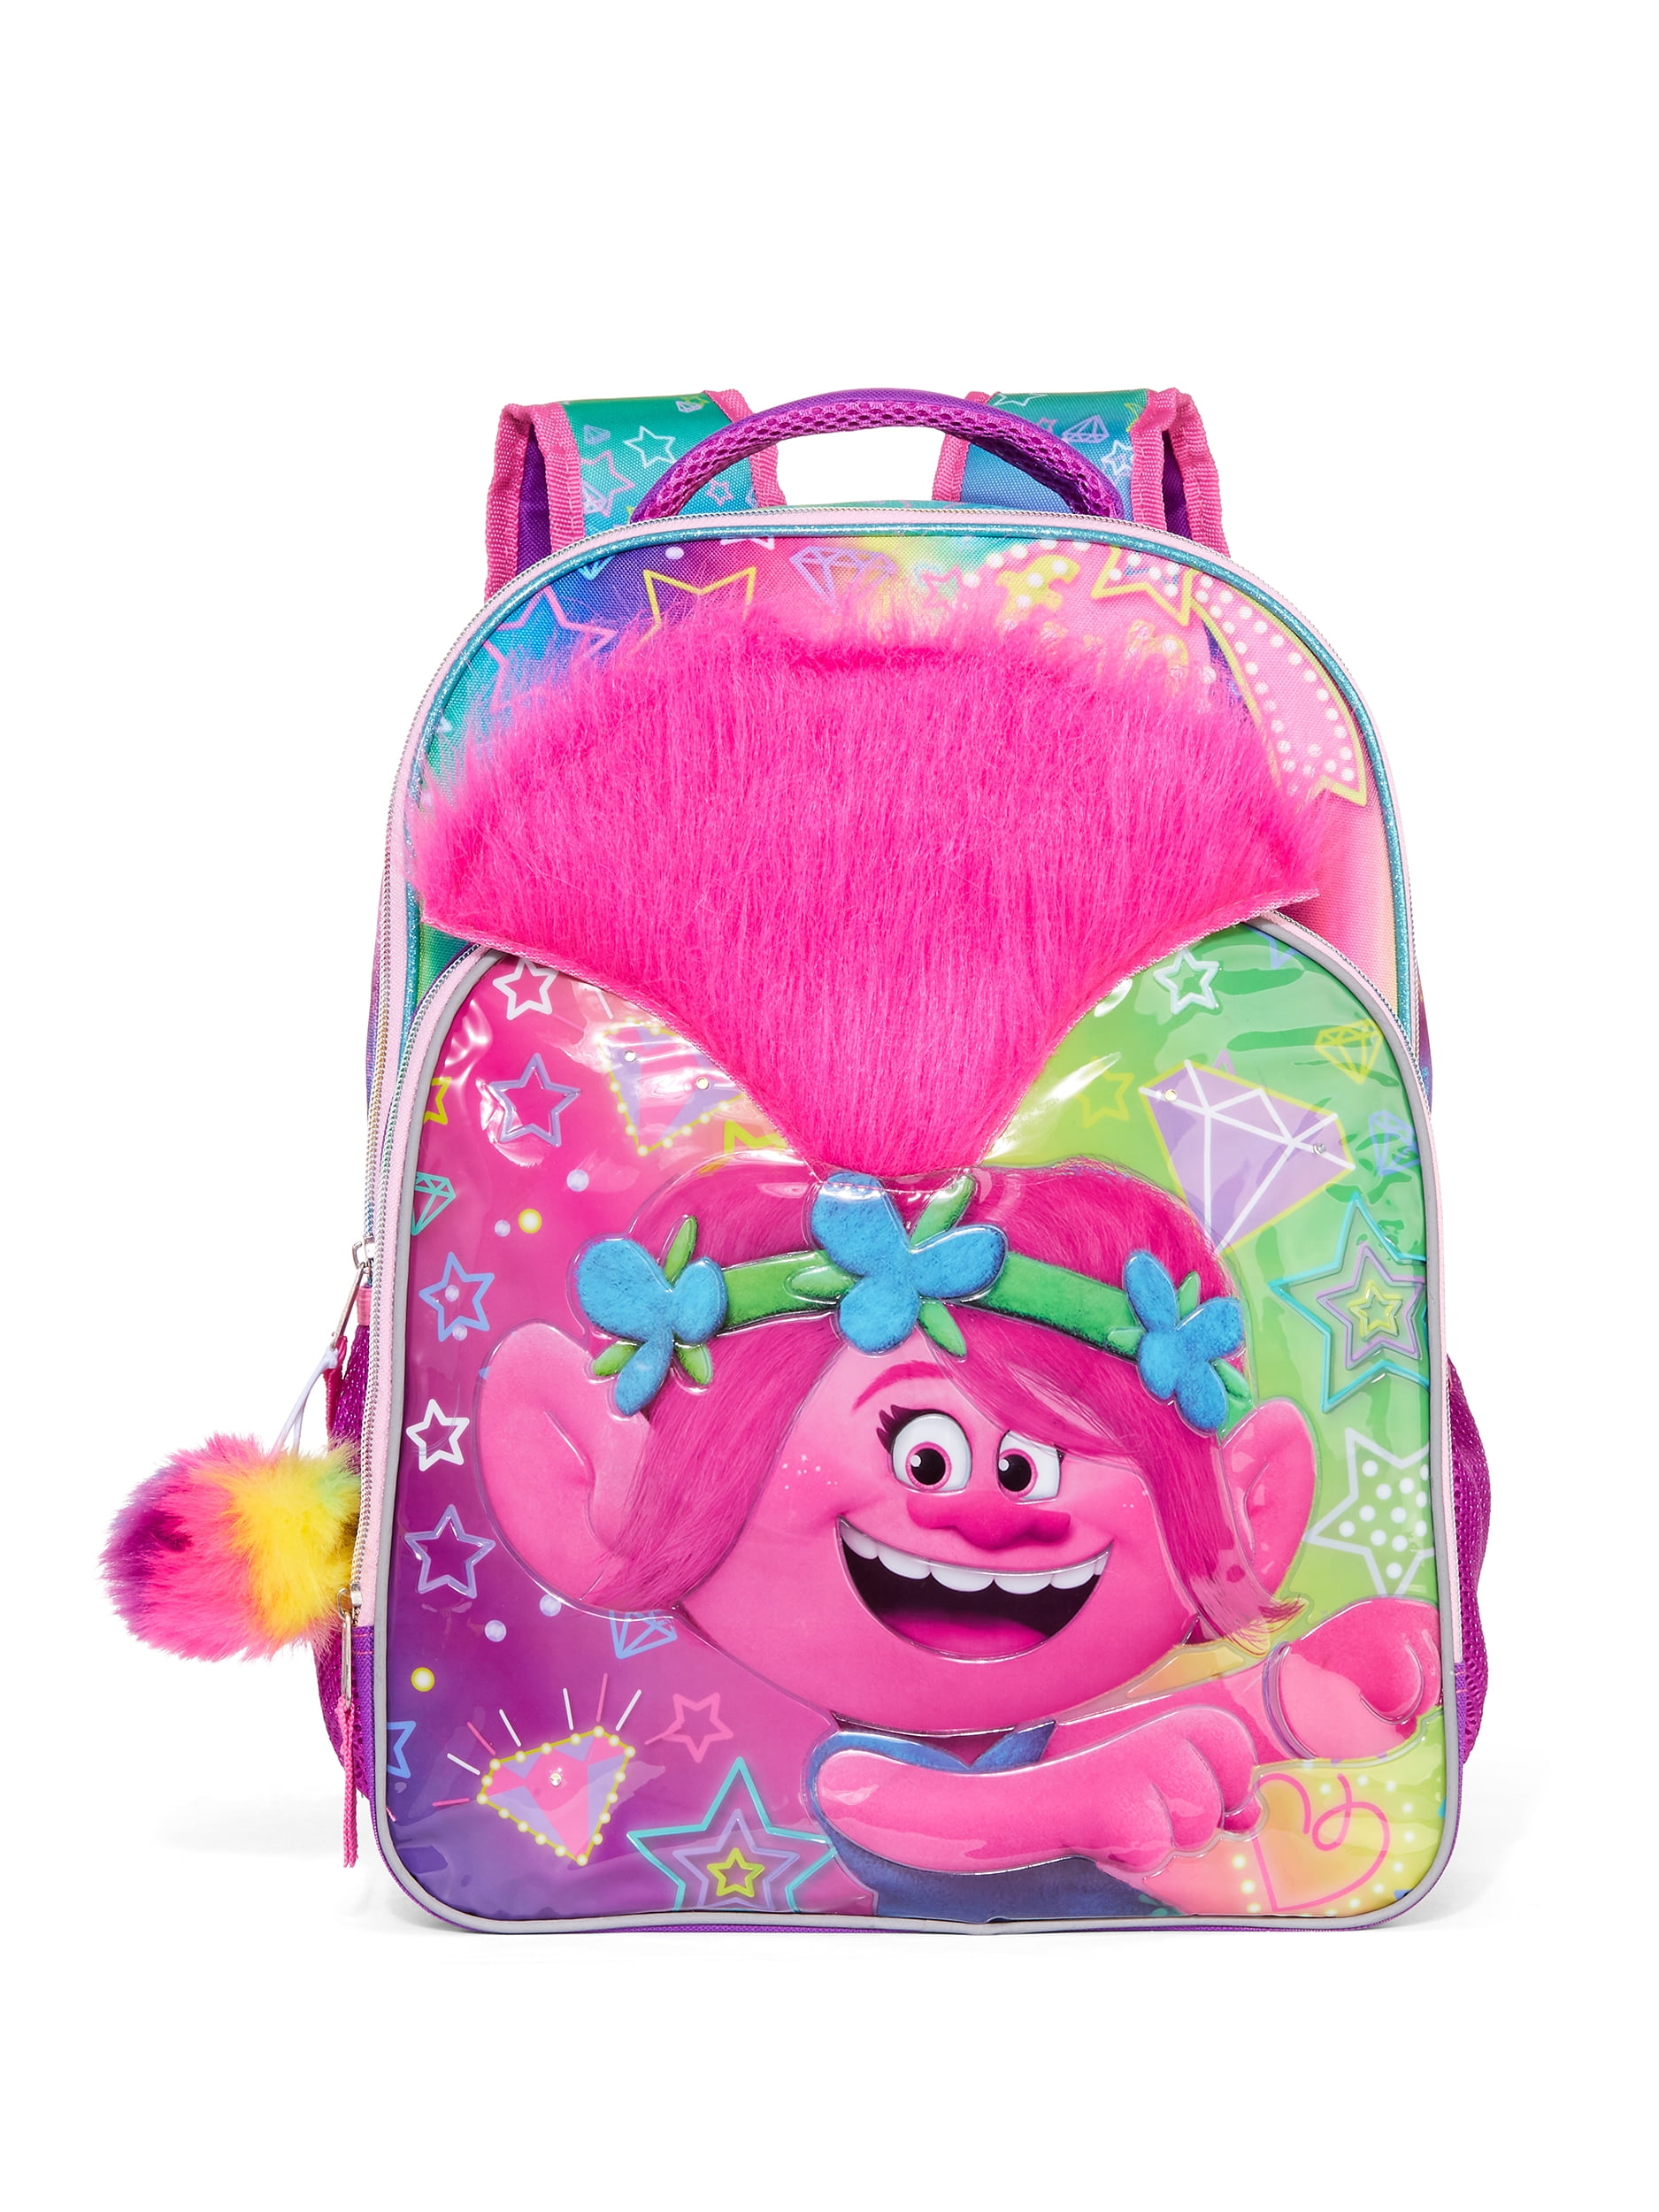 Trolls World Tour Poppy Girl School Backpack BookBAG Lunch Box SET Kids Gift Toy 